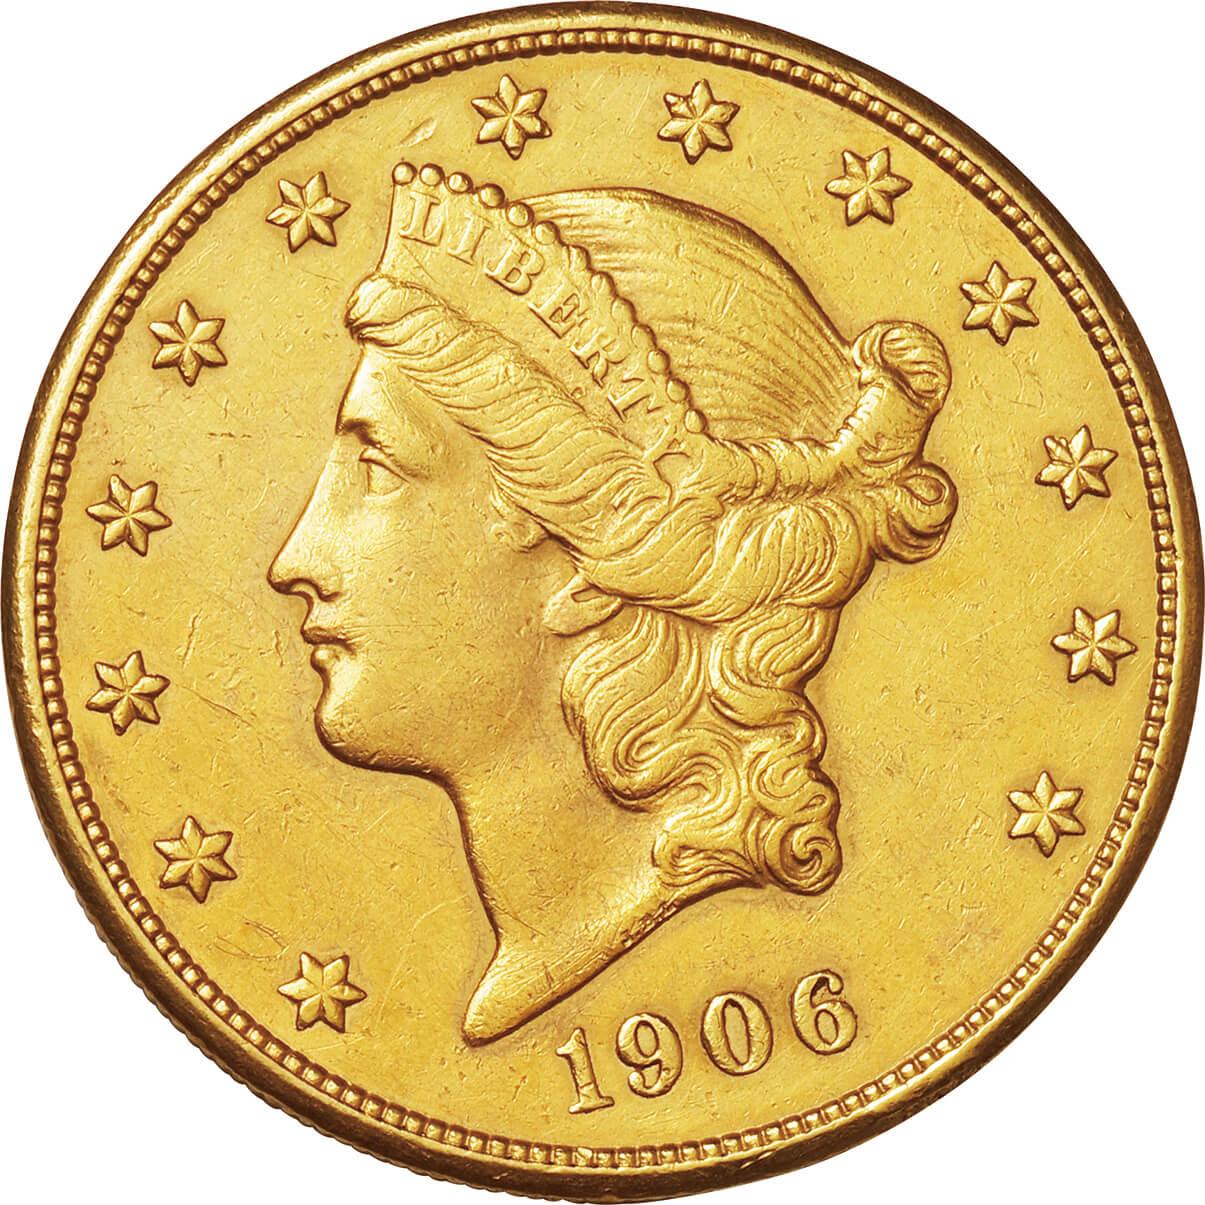 B203 アメリカ金貨 一万ドル記念金貨 ゴールドバー 大型金貨 